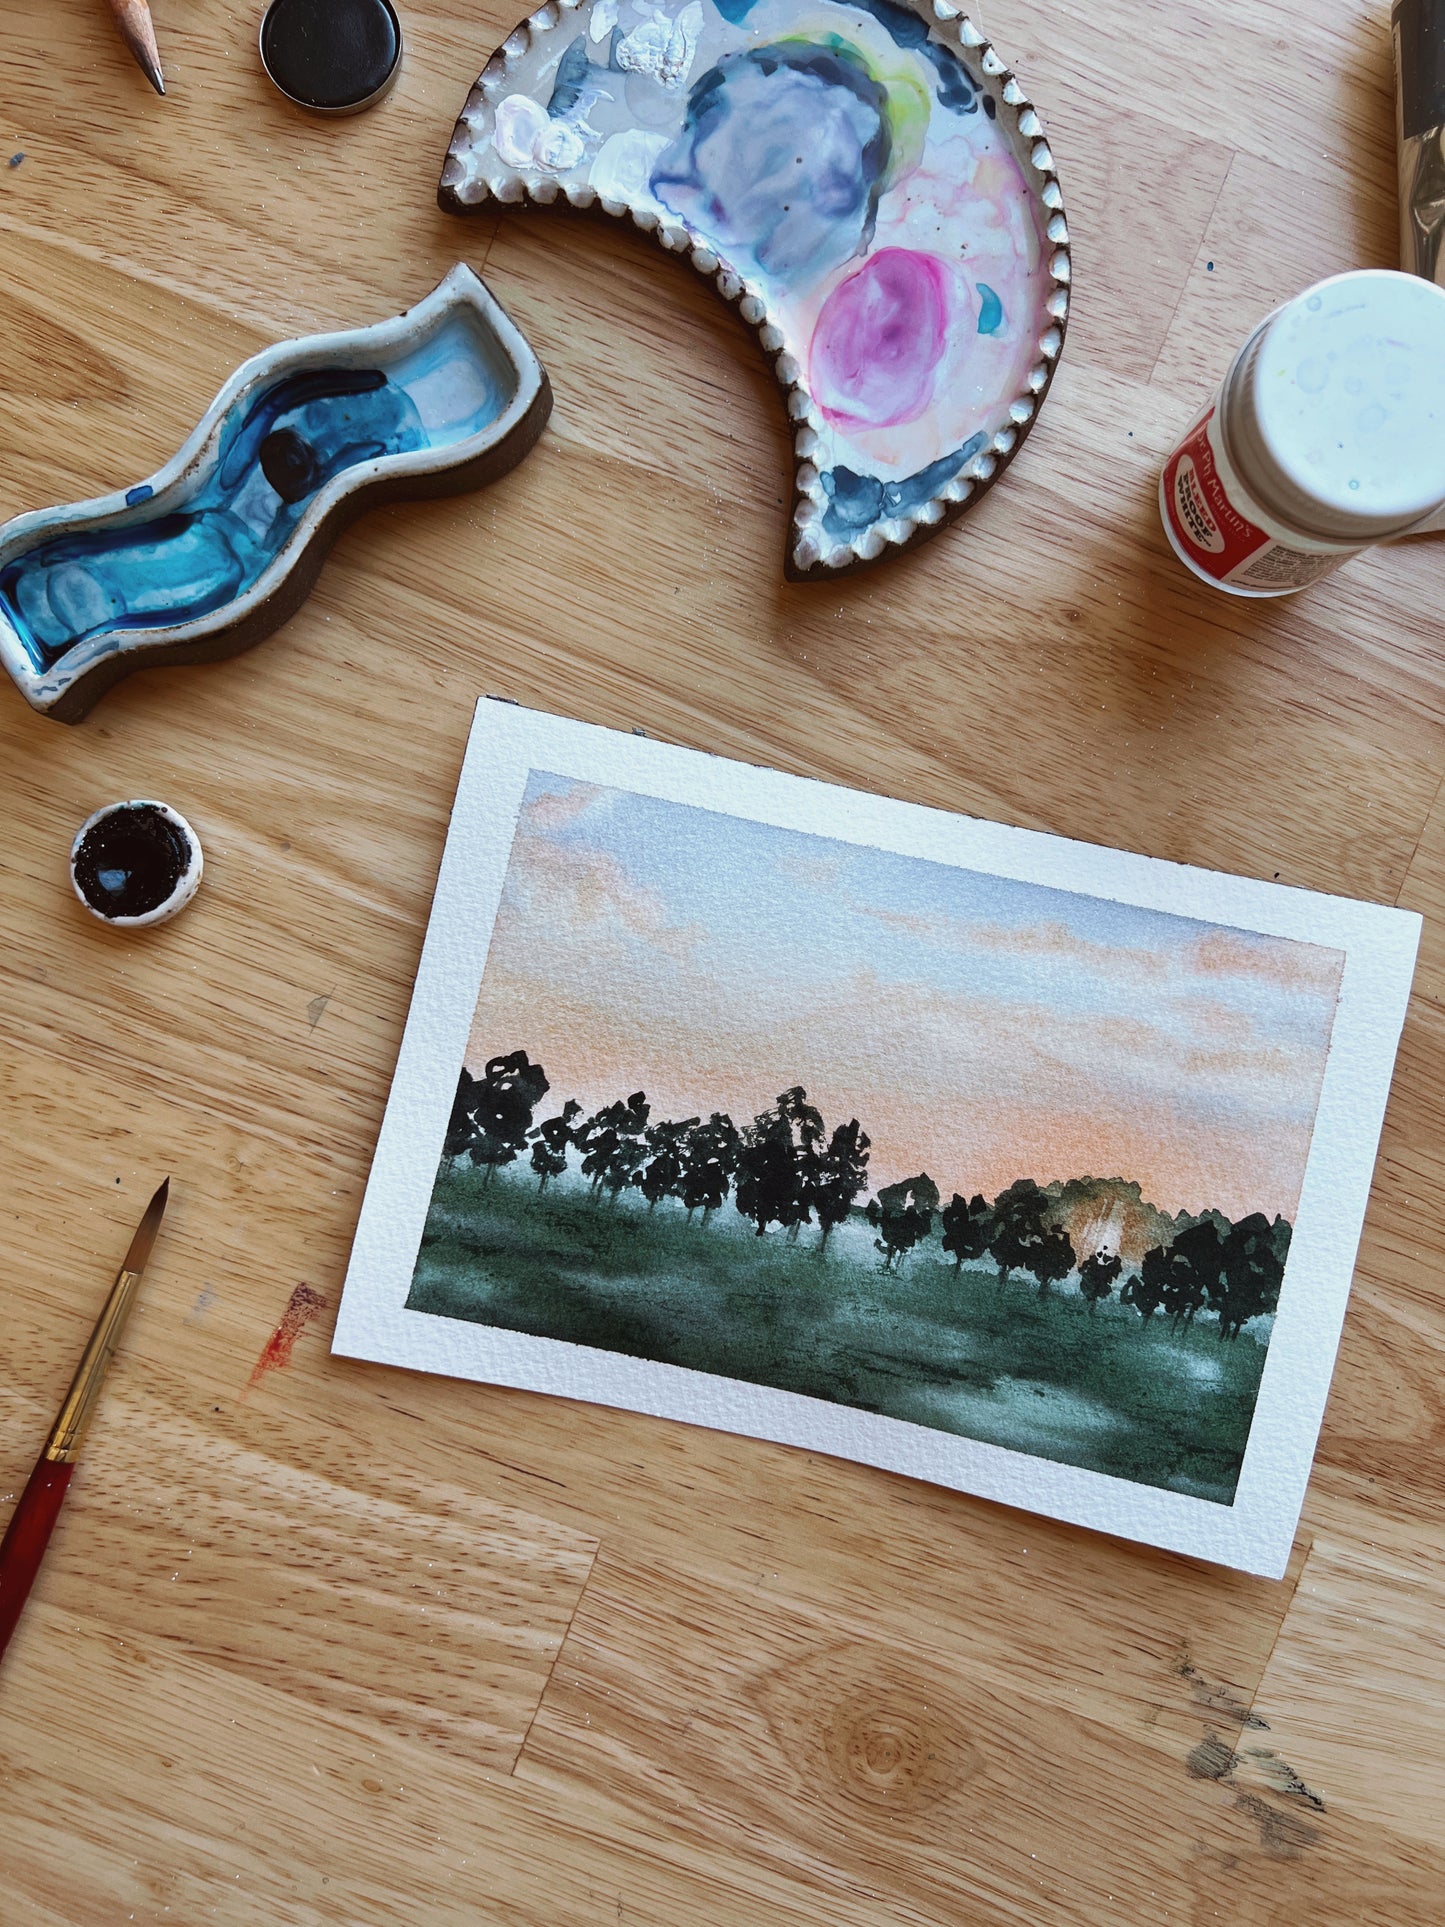 Intermediate Watercolor Landscapes With Kolbie Blume